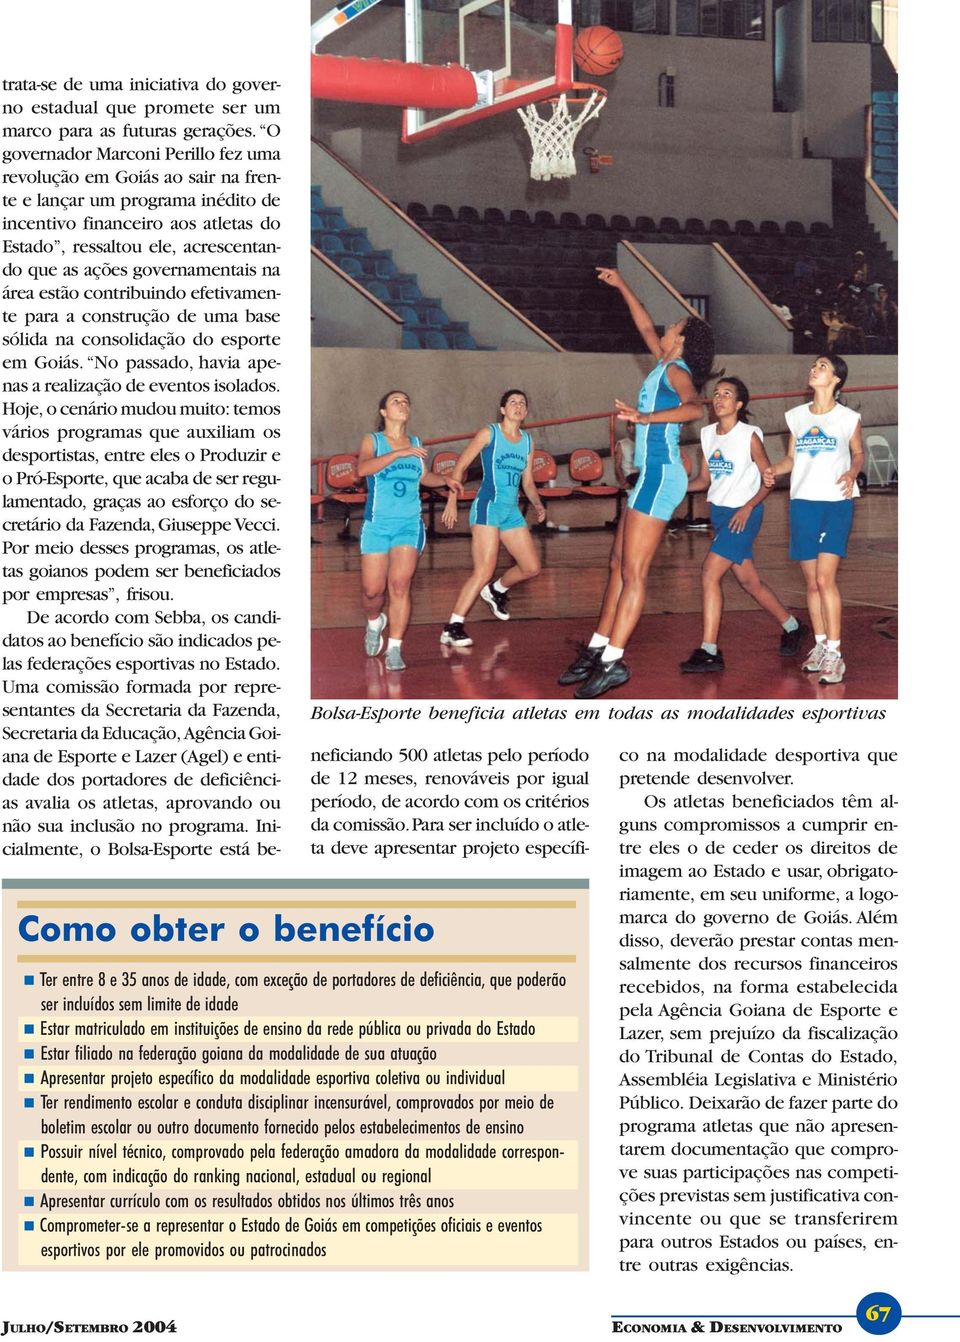 governamentais na área estão contribuindo efetivamente para a construção de uma base sólida na consolidação do esporte em Goiás. No passado, havia apenas a realização de eventos isolados.